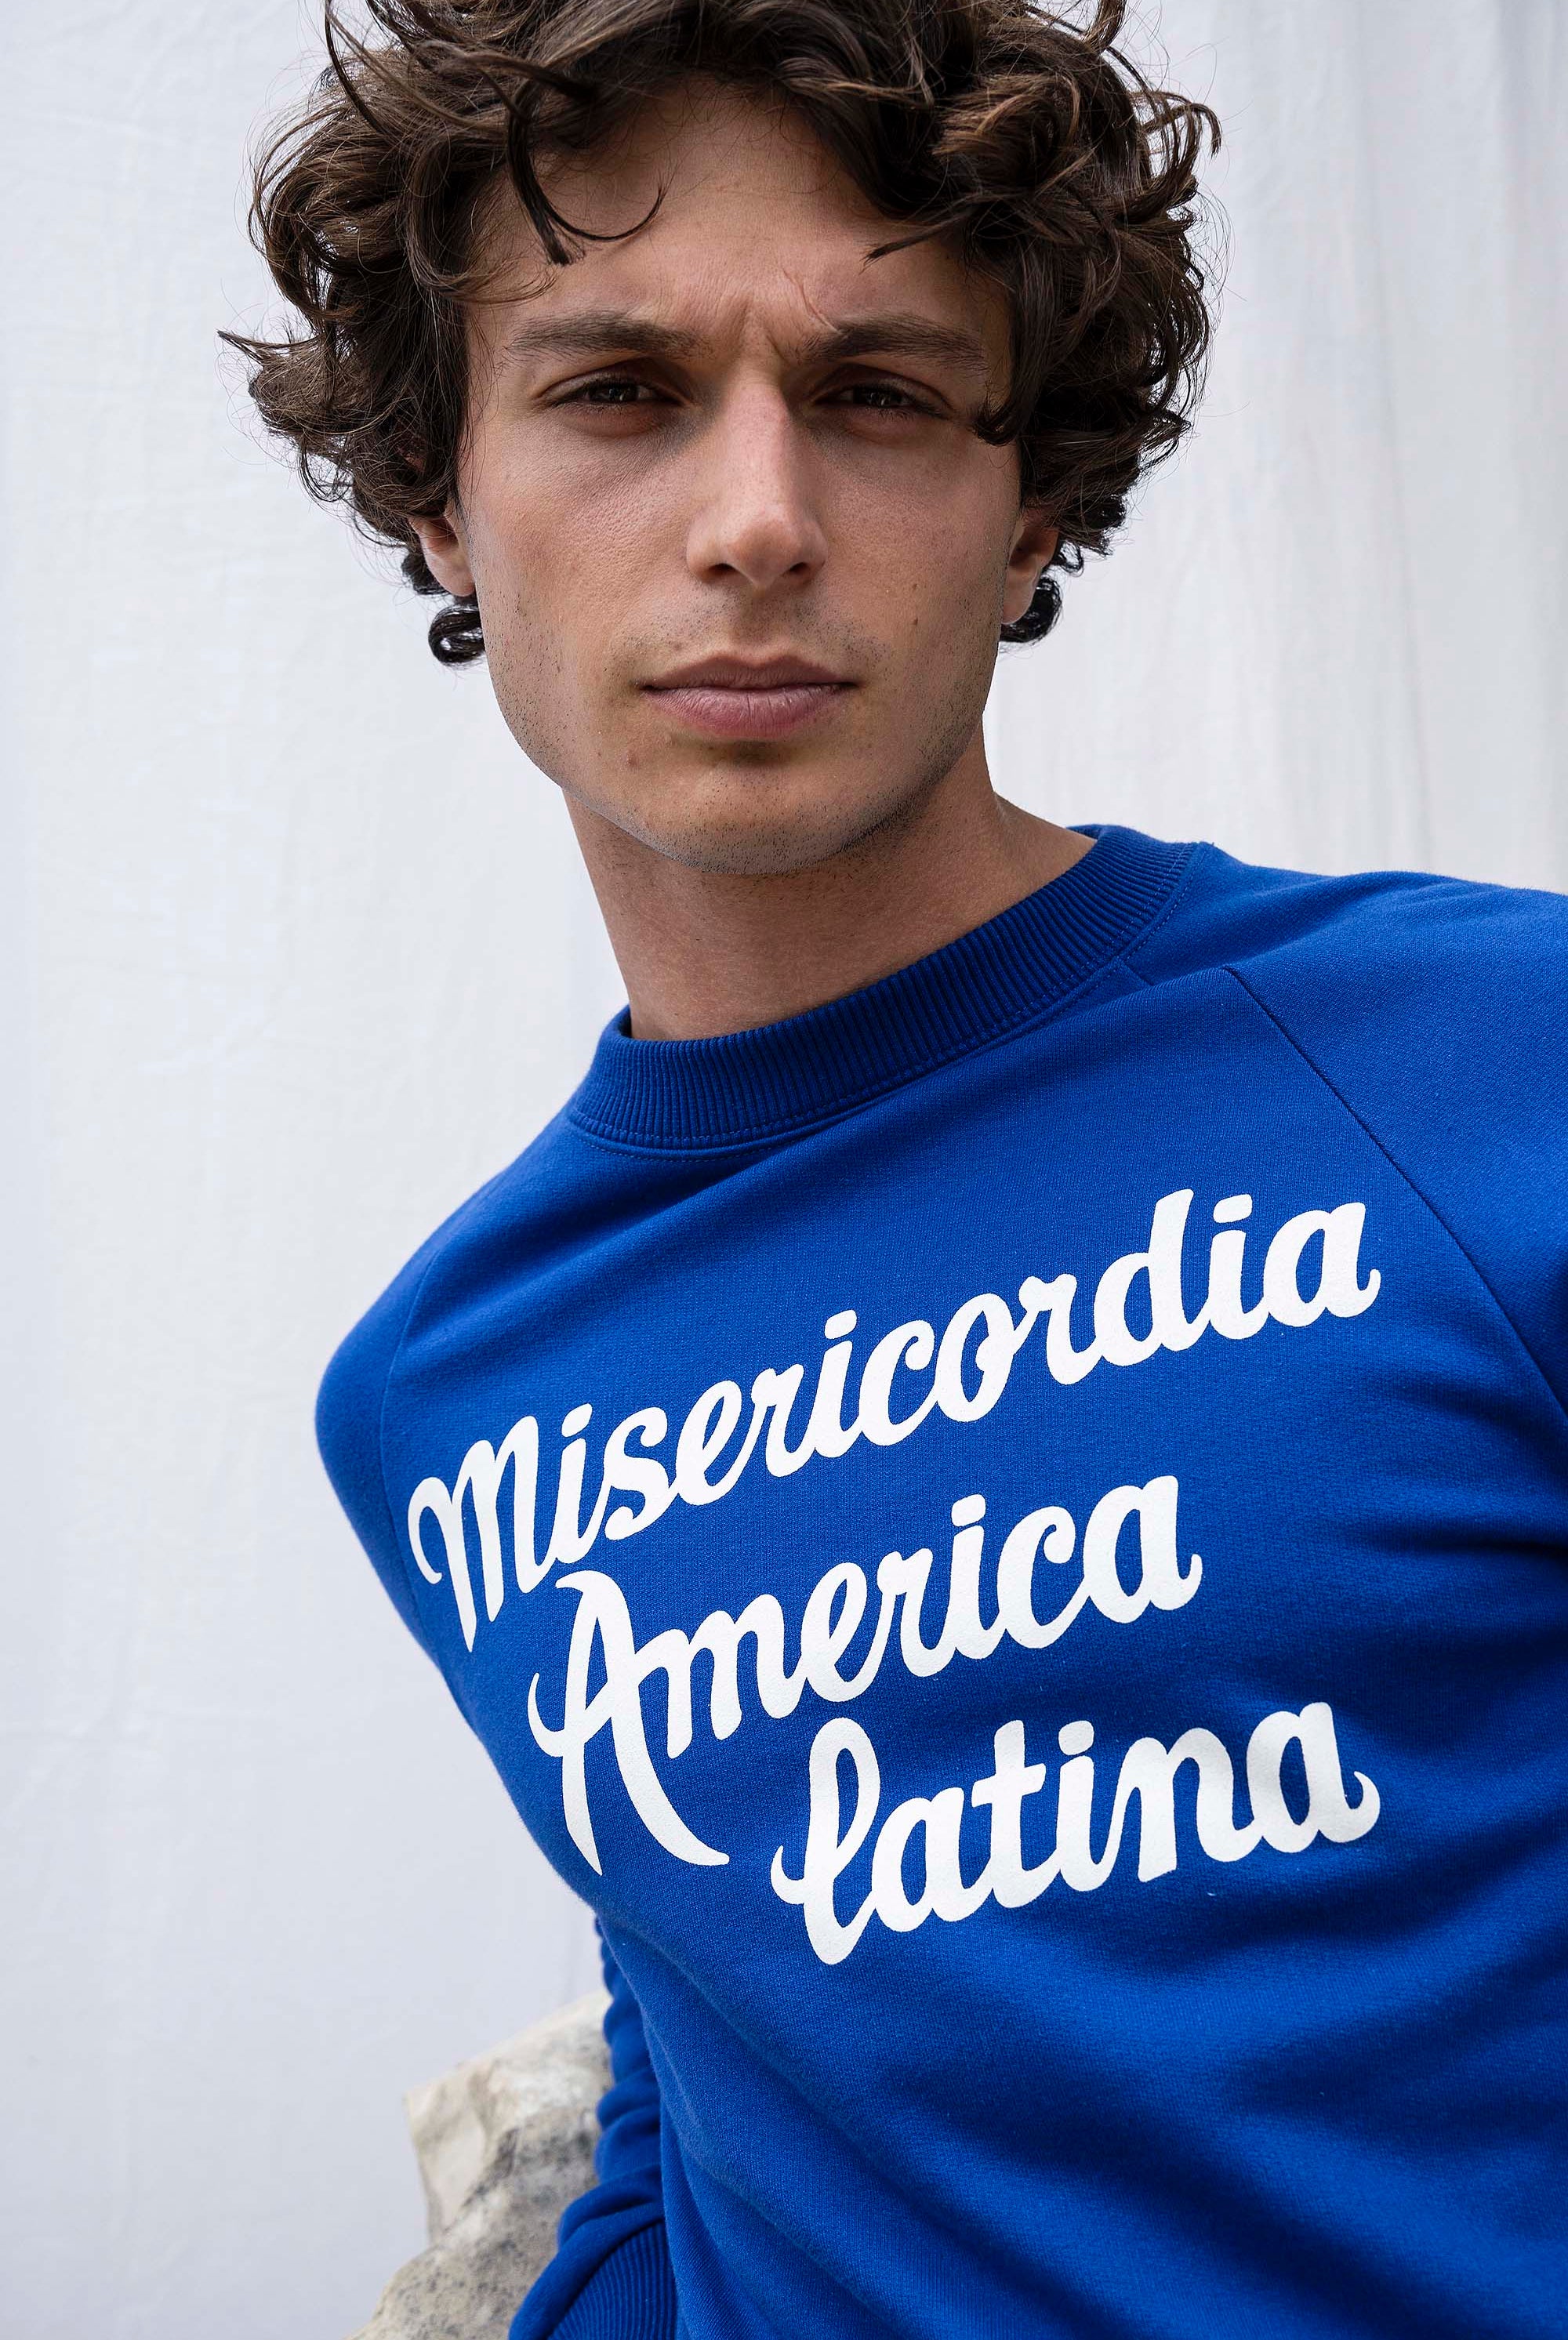 Sweatshirt Feliz Misericordia America Latina Bleu Saphir sweatshirts pour homme pour procurer une sensation de chaleur au quotidien